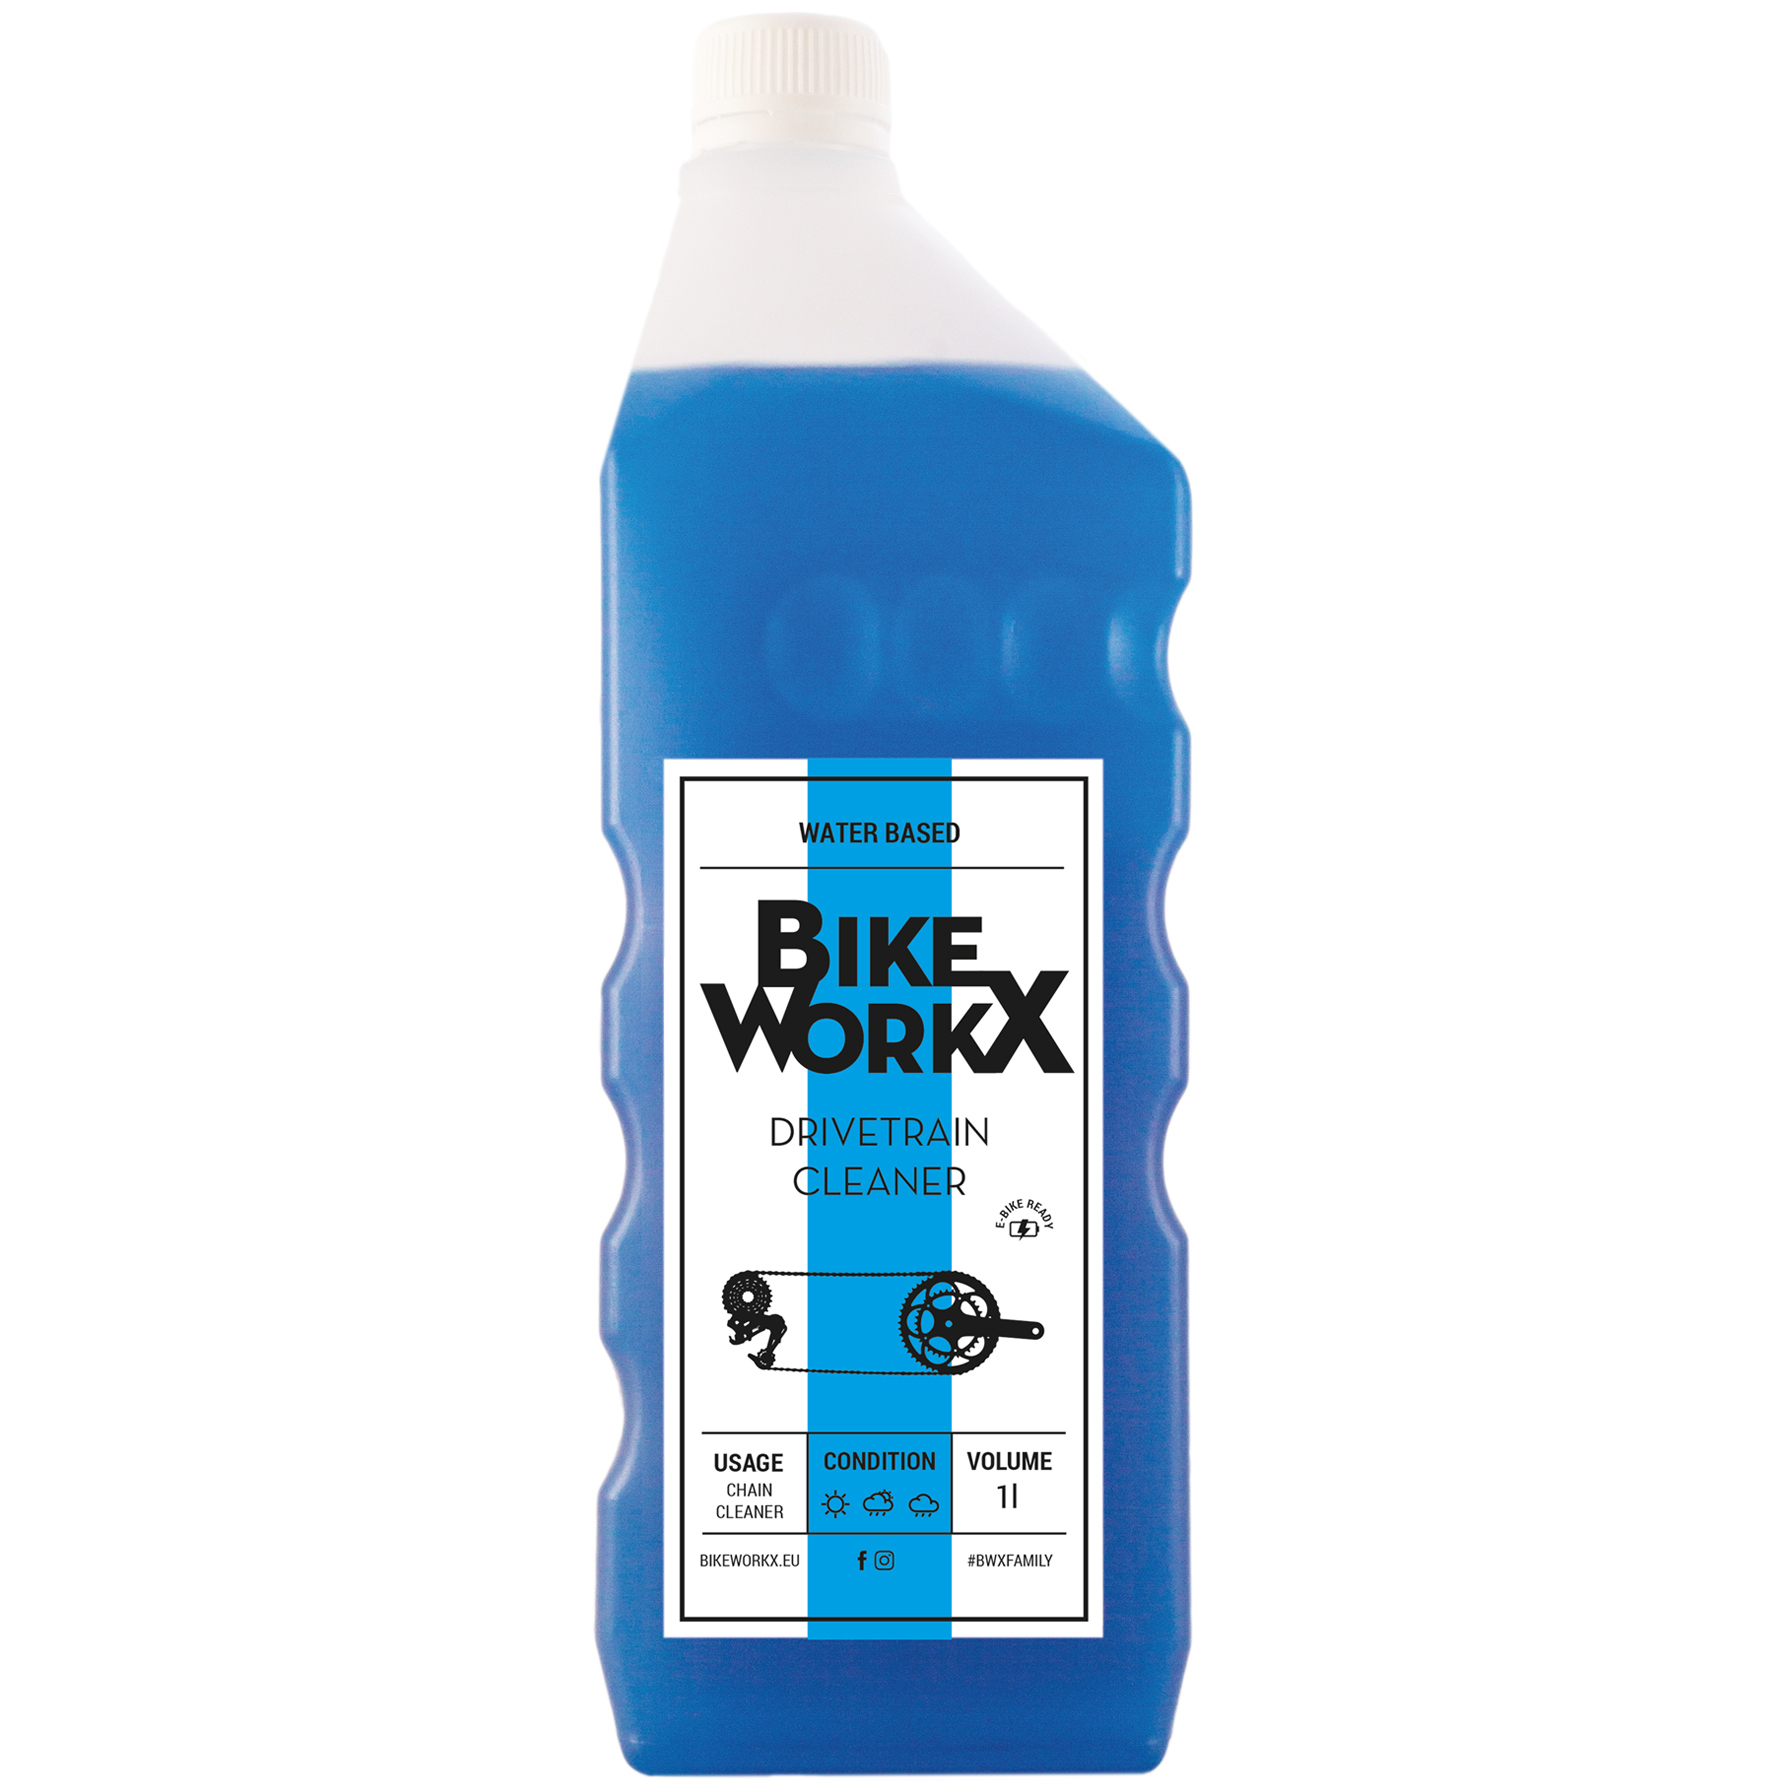 Bild von BikeWorkx Drivetrain Cleaner - Antriebreiniger - Flasche 1000ml